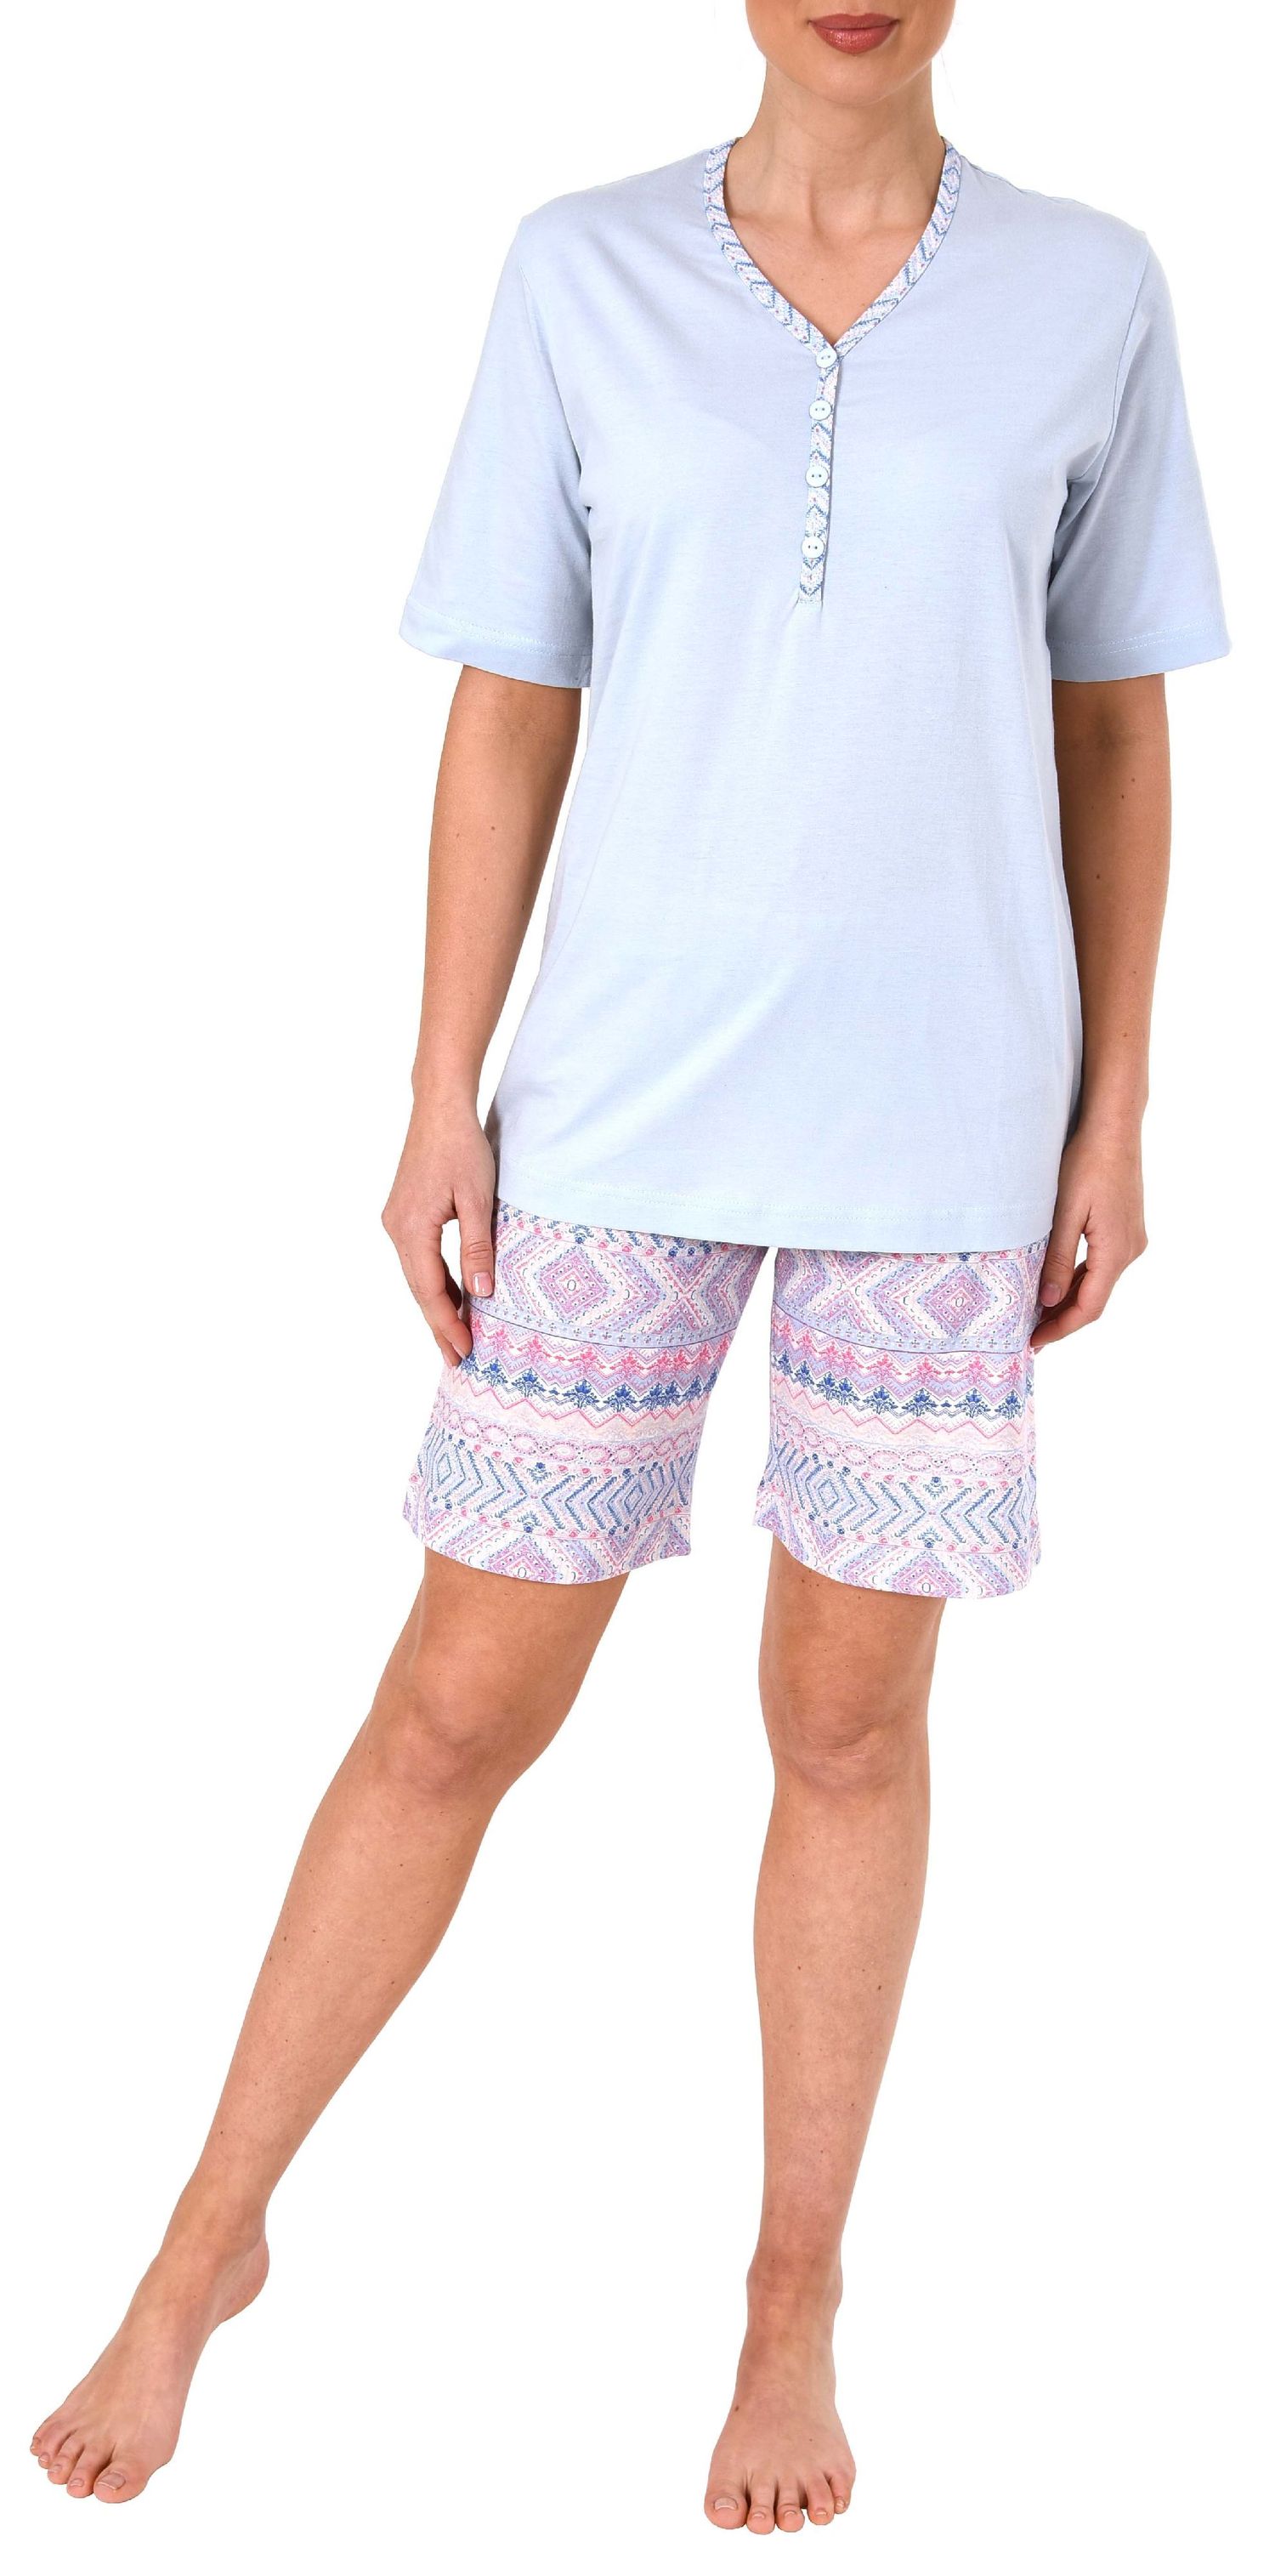 Damen Shorty Pyjama kurzarm Ethnolook - auch in Übergrössen bis Grösse 60/62 – 191 205 90 226